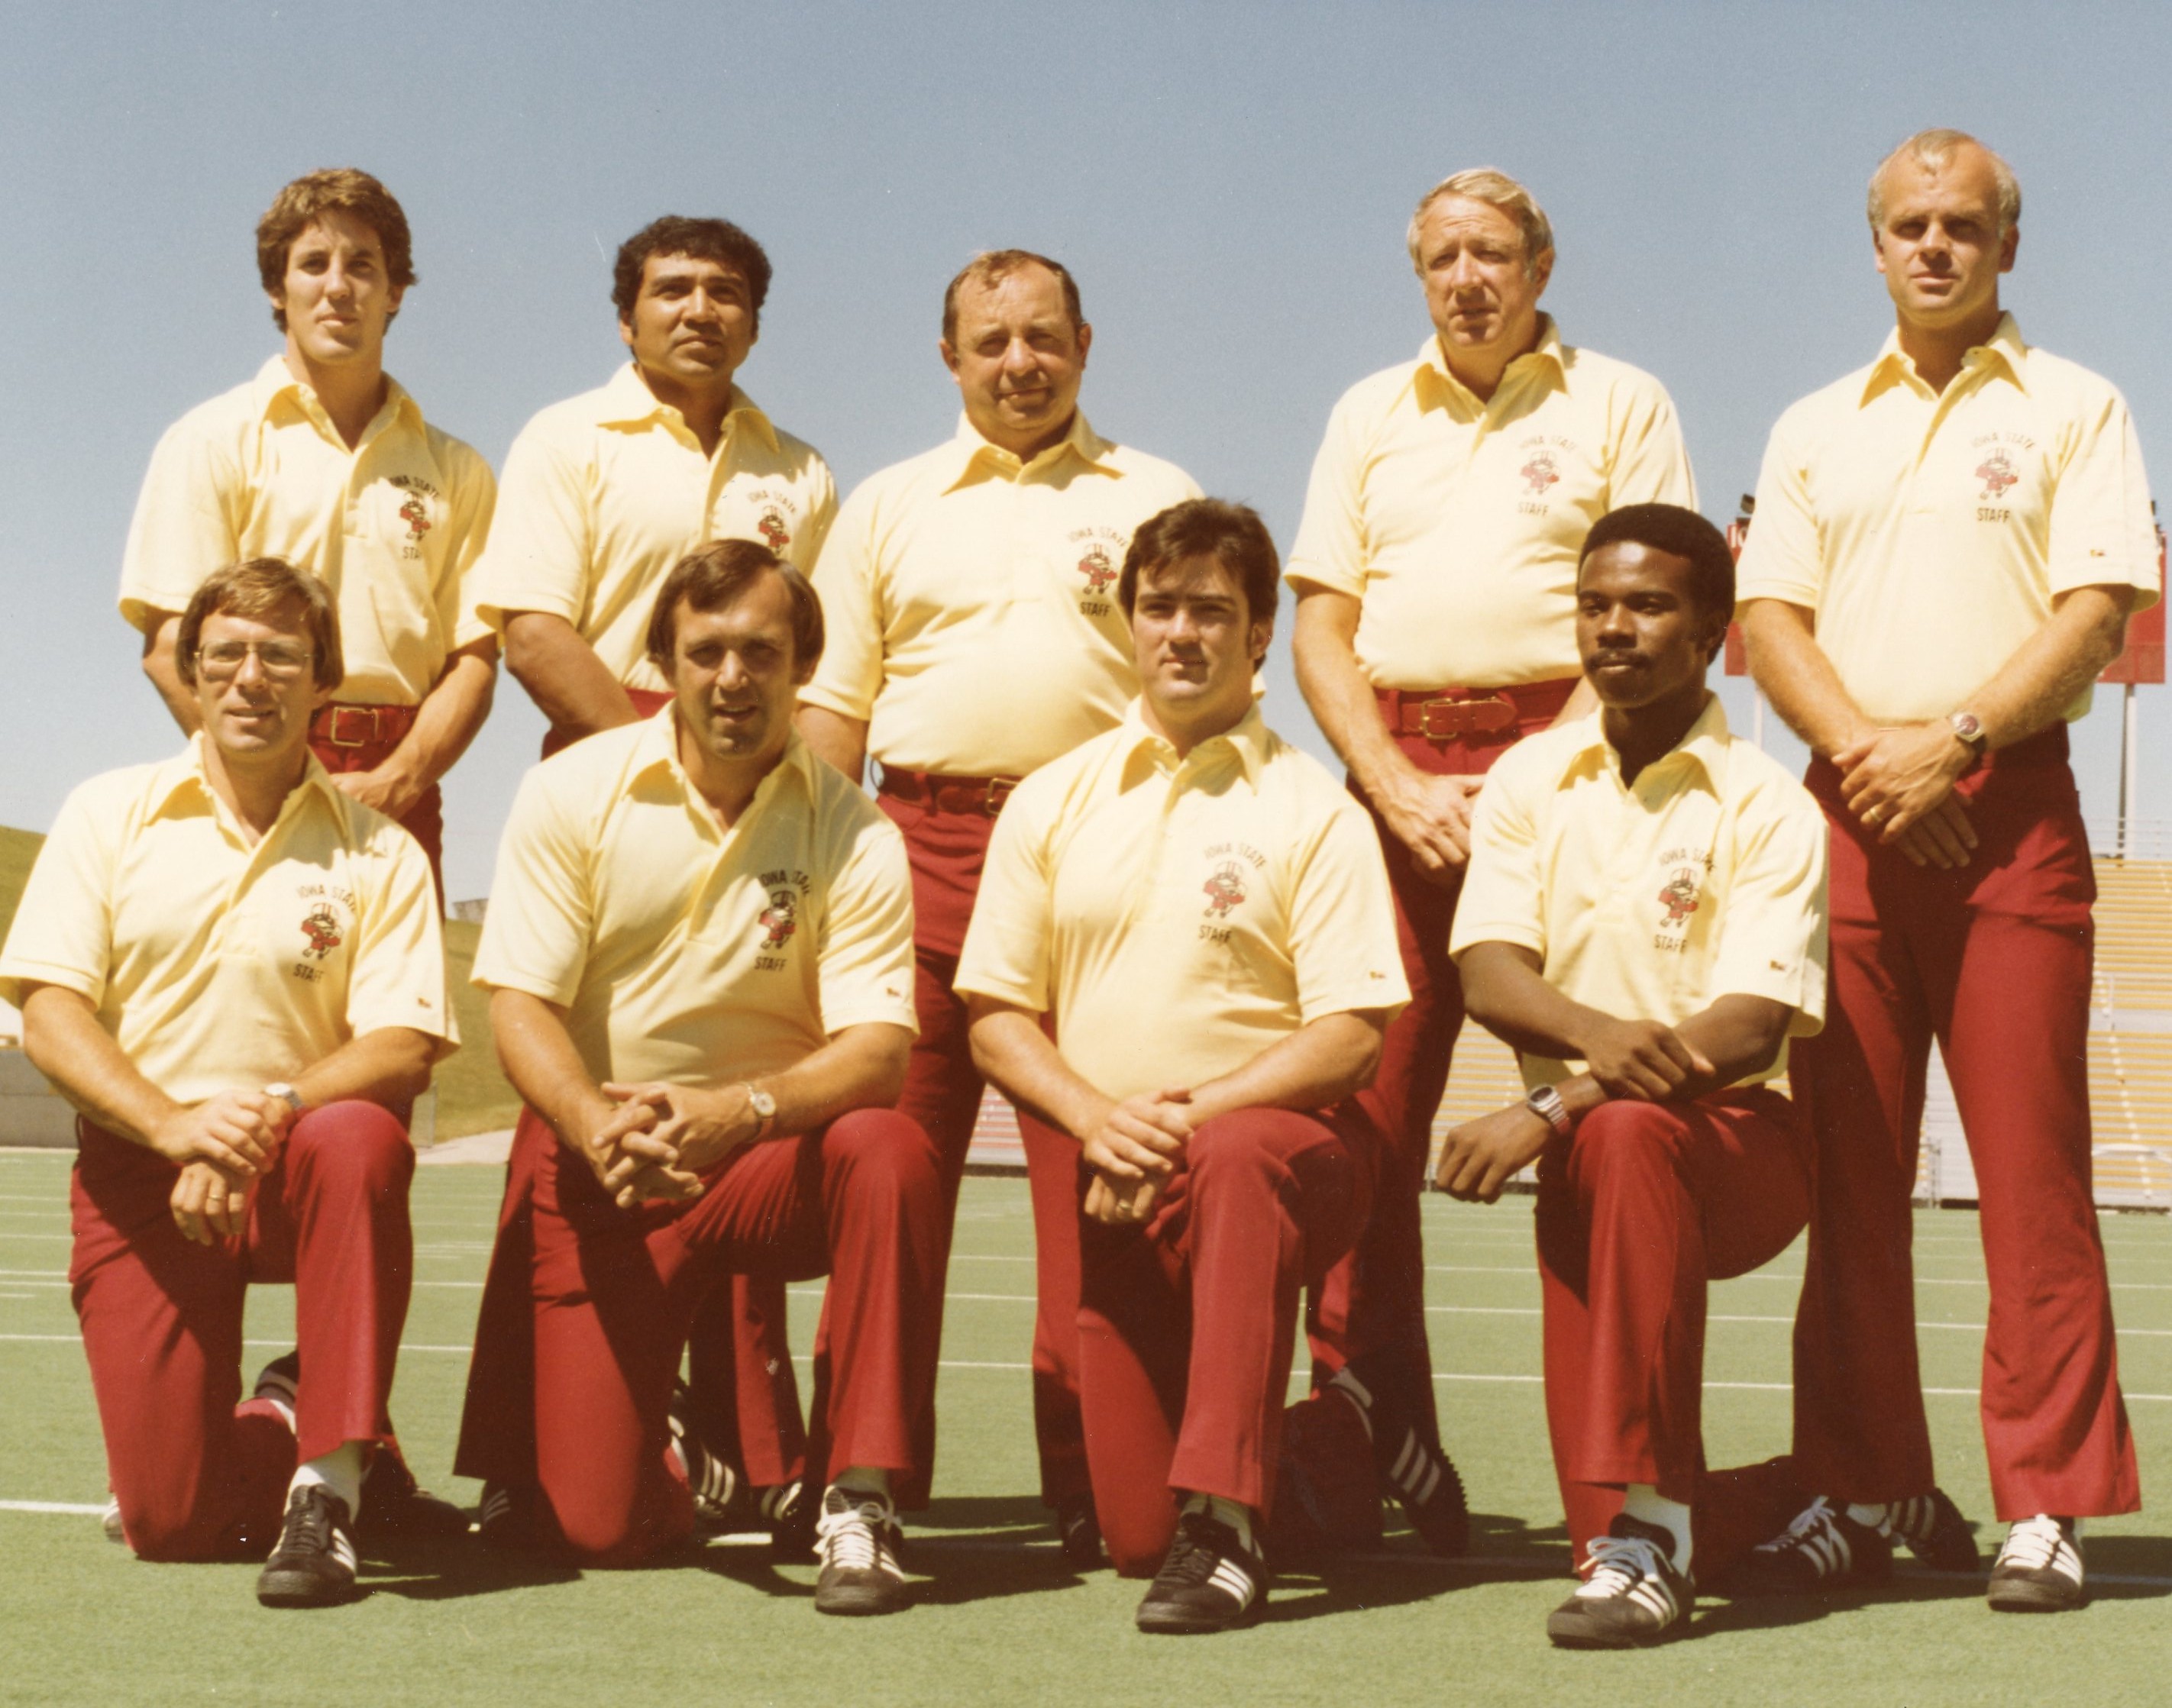 1978-isu-coaching-staff-photo.jpg